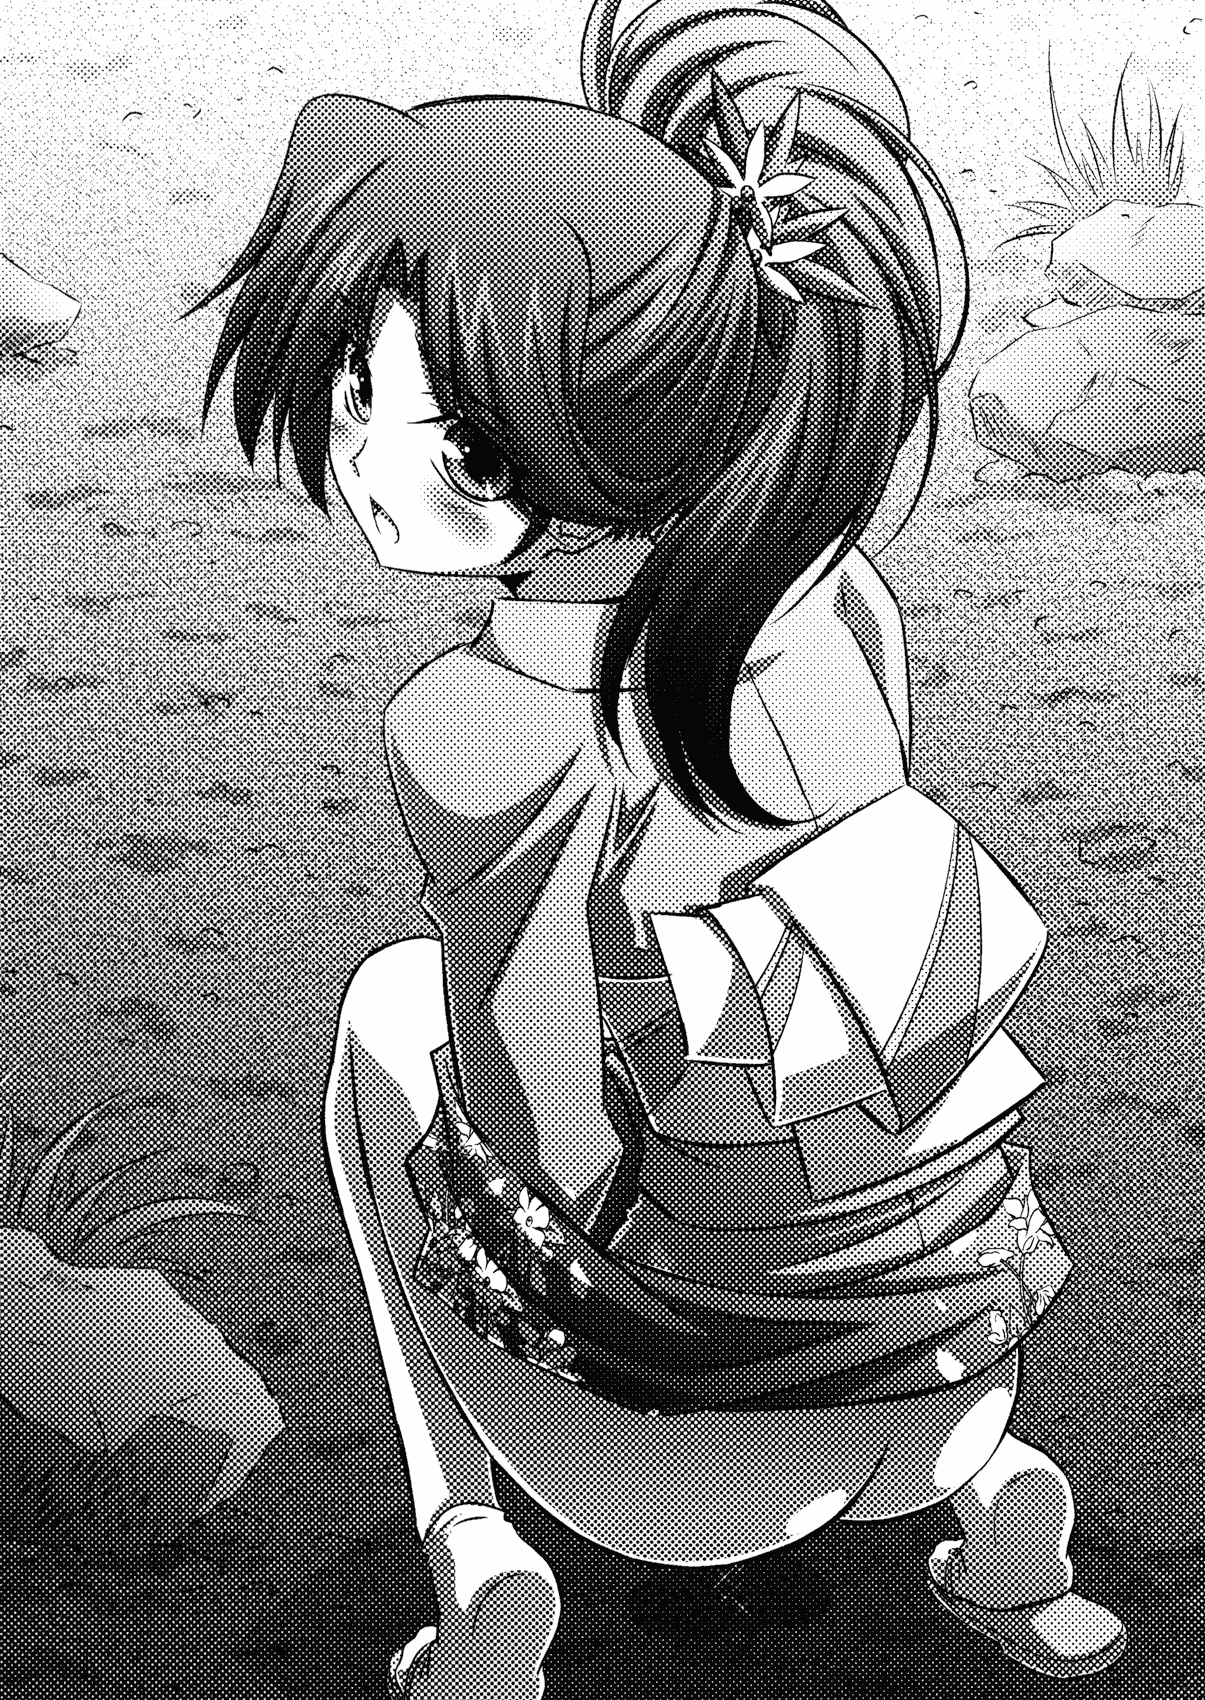 [Yamamoto Saki × Izumi Mahiru] Love-on Yukkuri Shiteitte ne! [山本沙姫 & 泉まひる] らぶおん 湯っくりしていってね！ (二次元ドリーム文庫122)